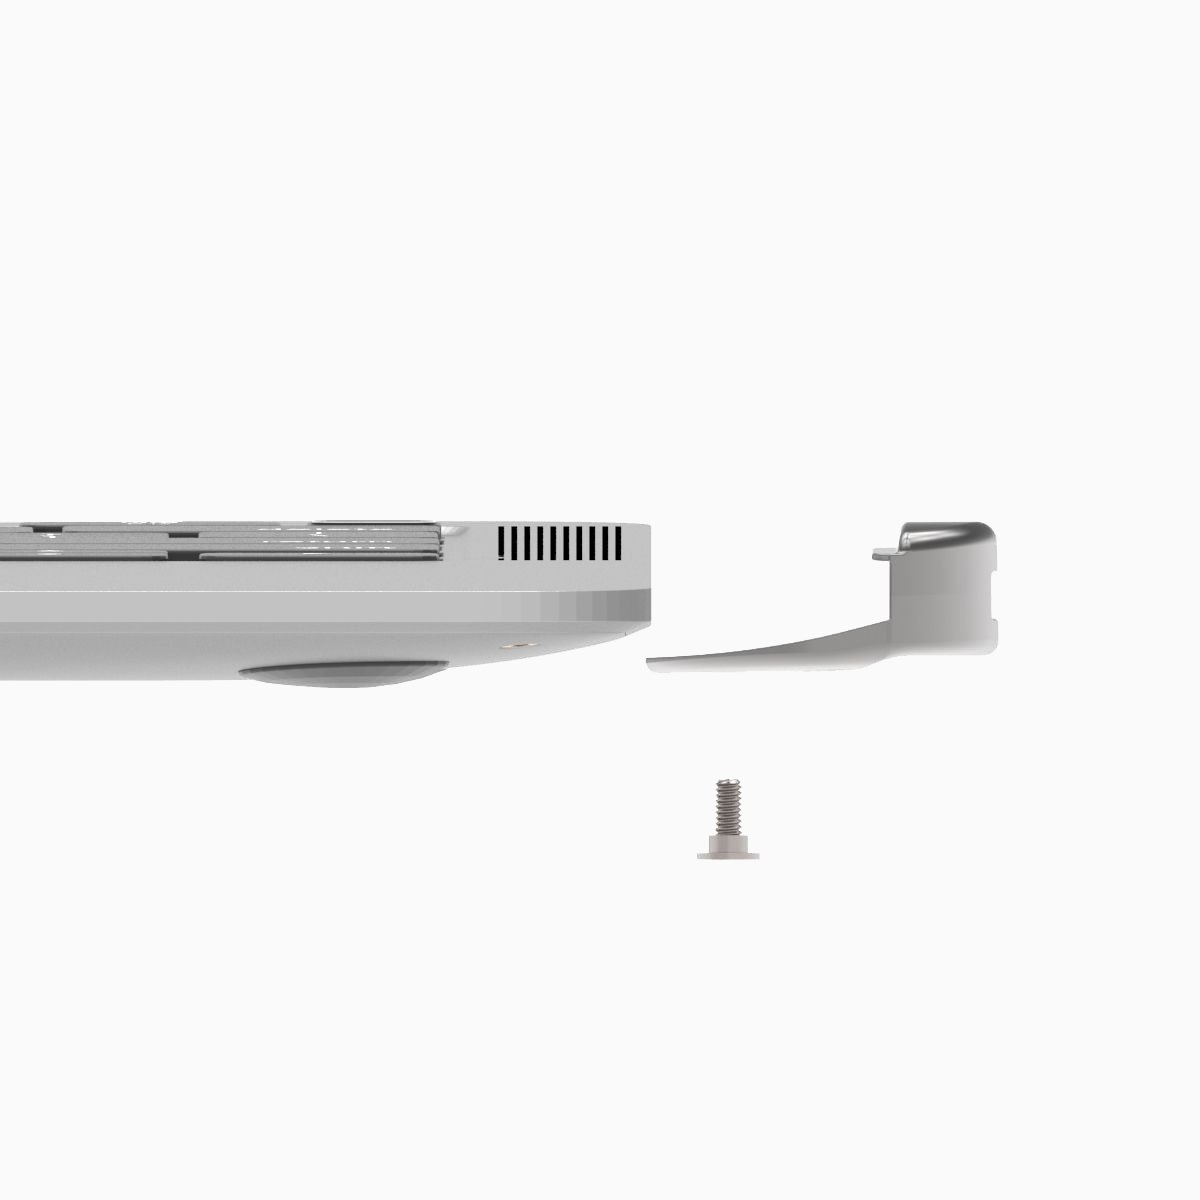 Maclocks MacBook Air Lock – The Ledge